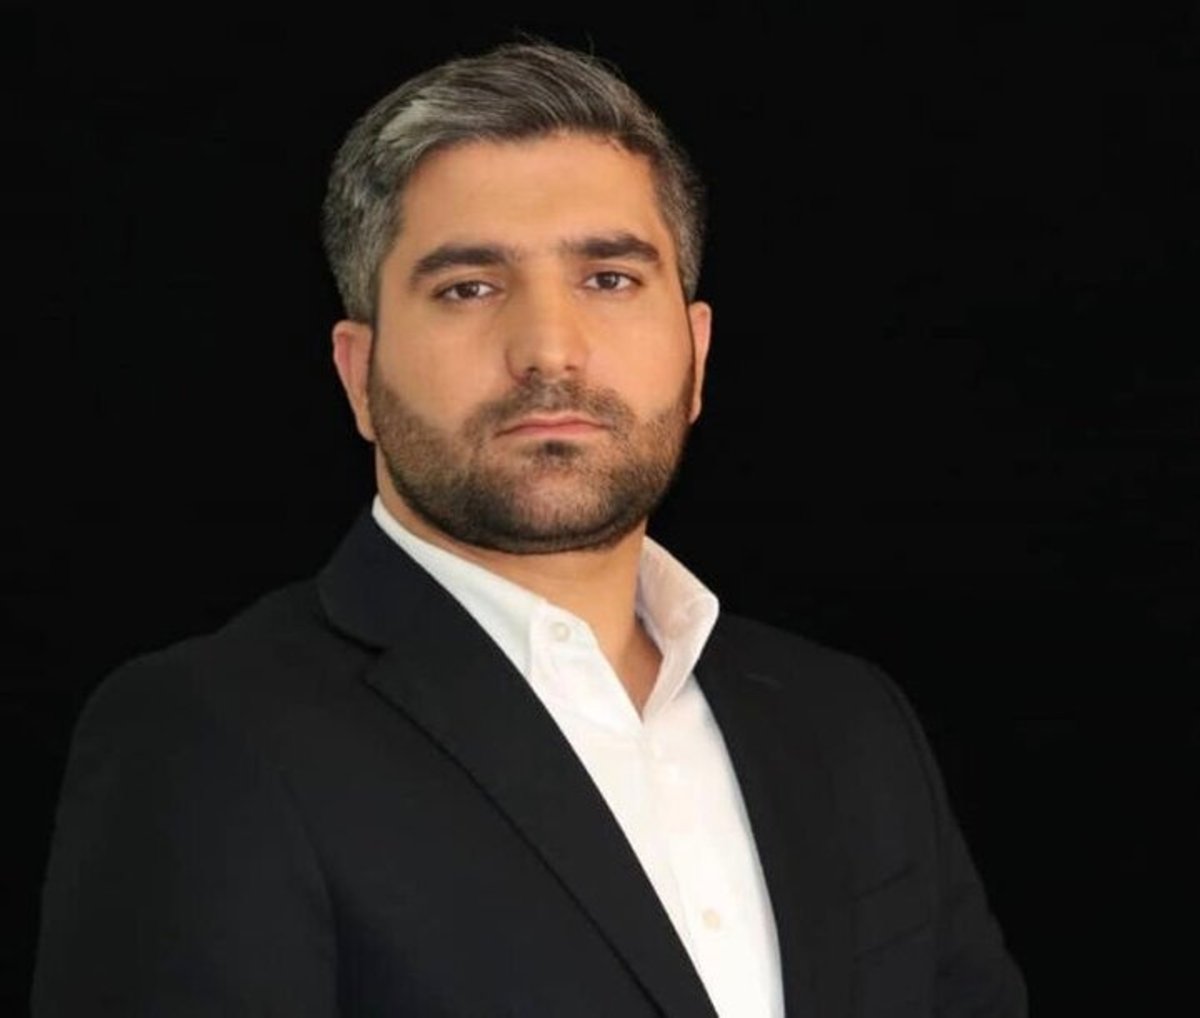 شهردارتهران محمد رحیم مرتضوی را به عنوان شهردار منطقه ۹ منصوب کرد